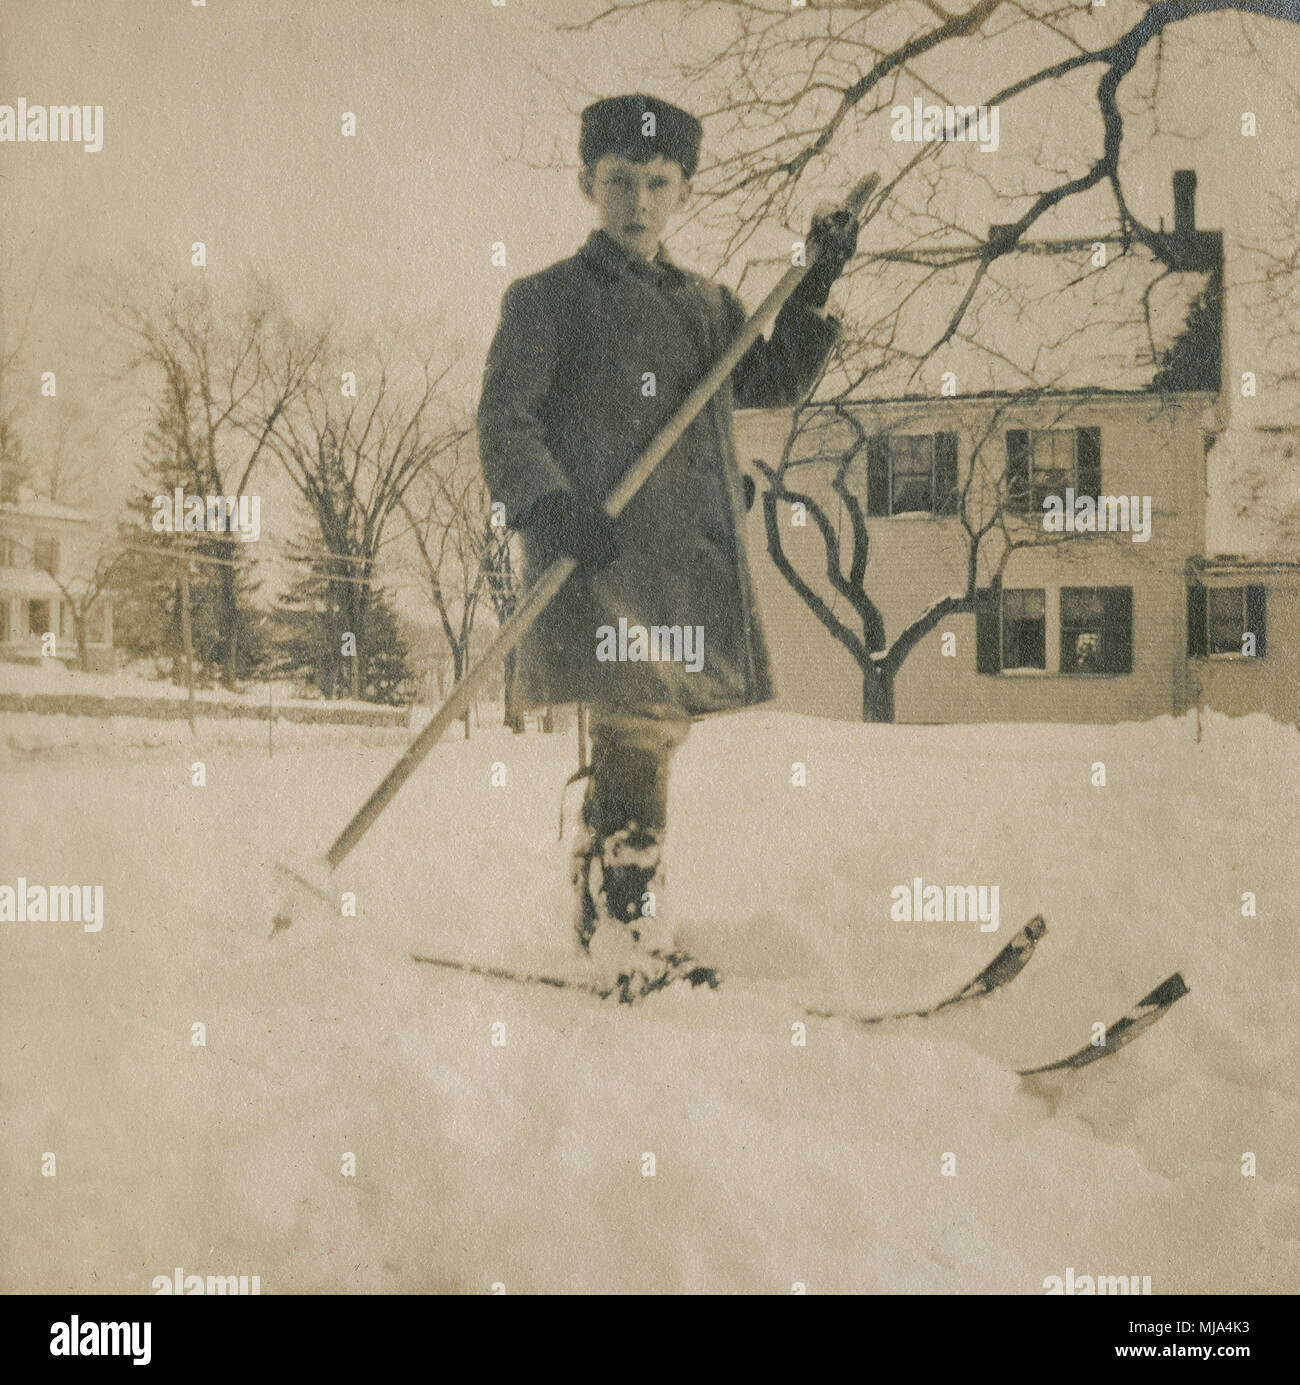 Antique c1908 la fotografia del ragazzo in inverno con gli sci e sci pole. Posizione sconosciuta, probabilmente la Nuova Inghilterra, Stati Uniti d'America. Fonte: originale stampa fotografica. Foto Stock